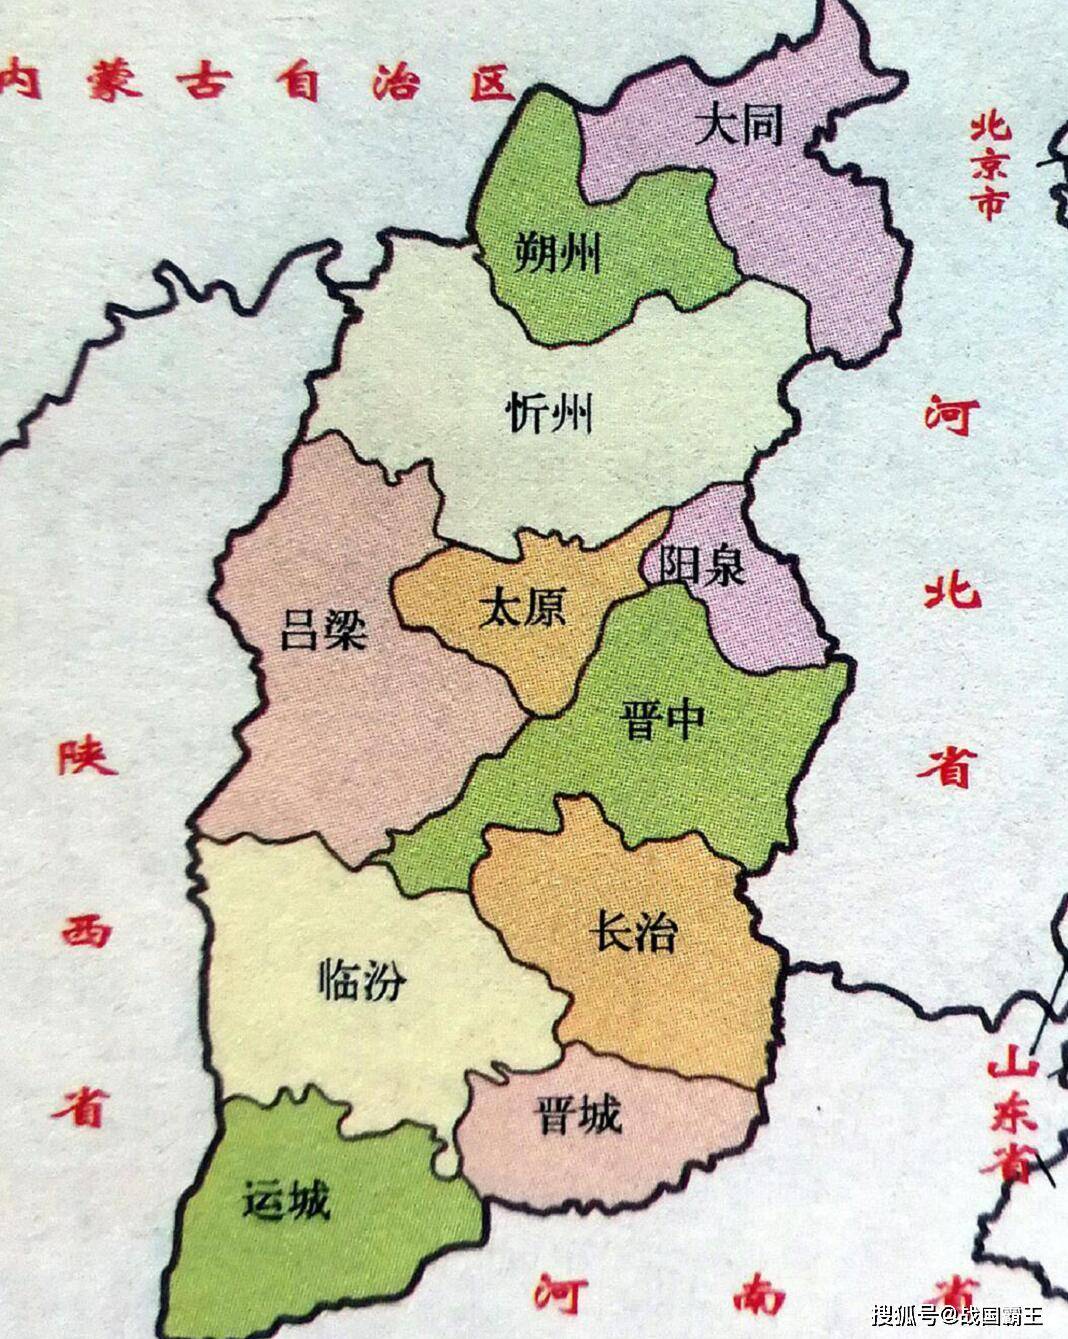 太原六城区划分图,太原市区域划分清晰图_大山谷图库